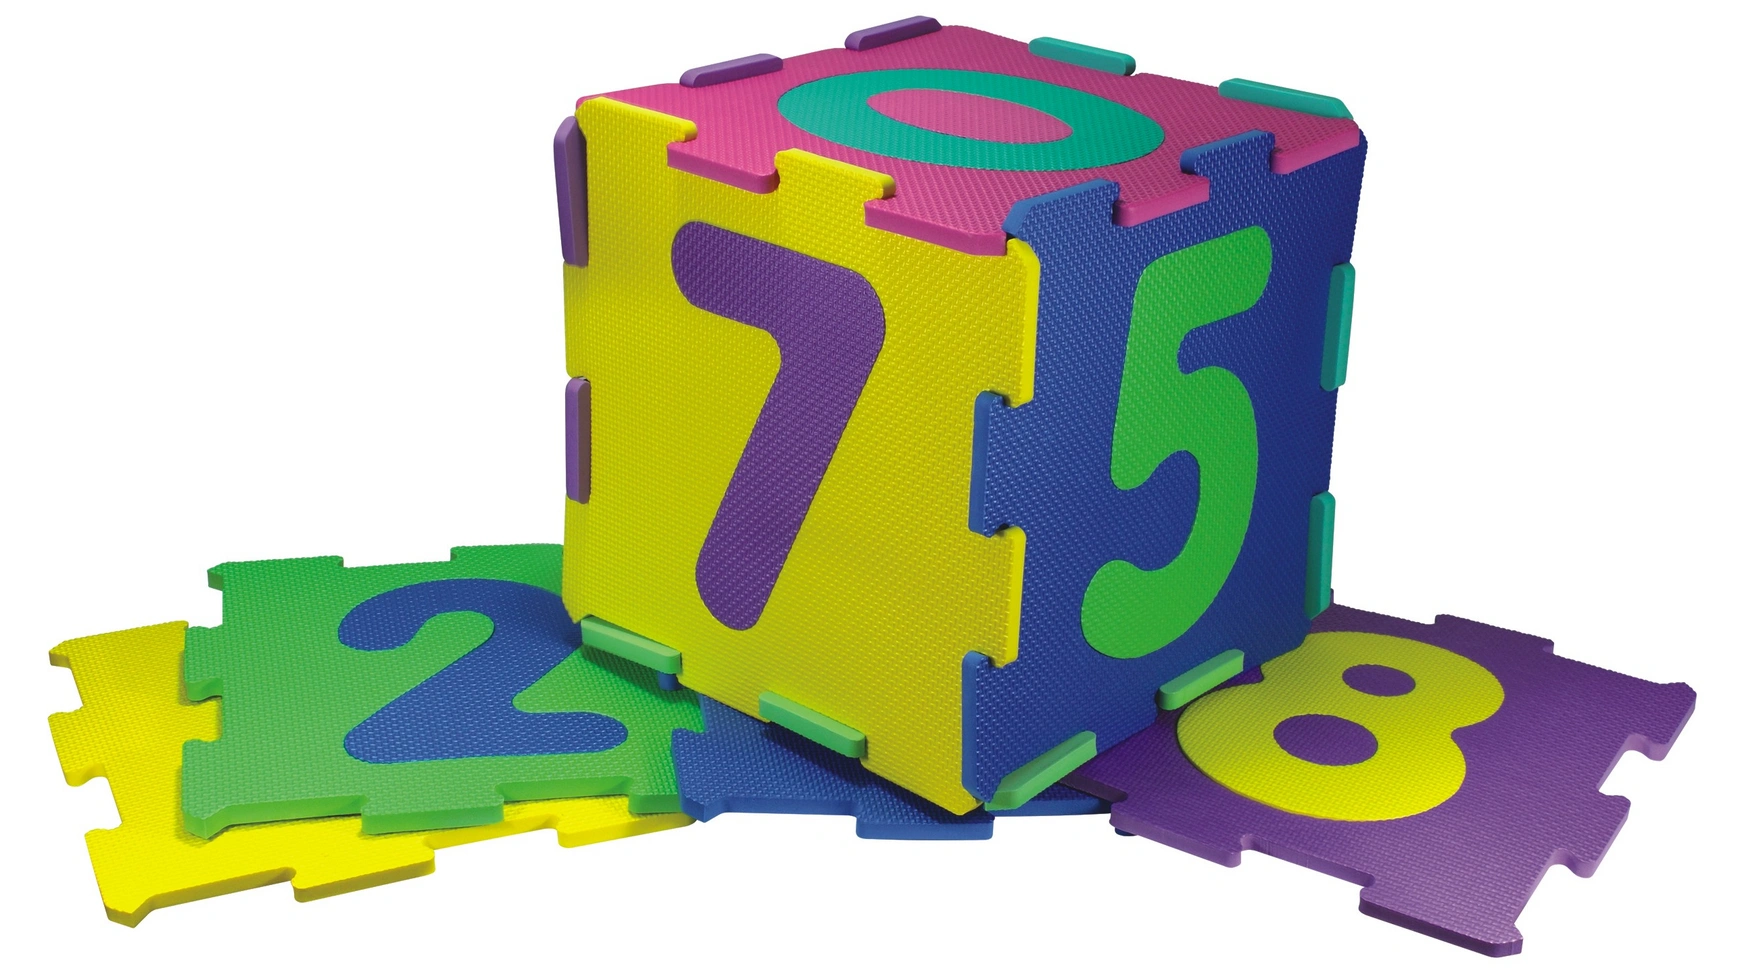 Игровой коврик с числами Xtrem Toys игры с числами от 1 до 150